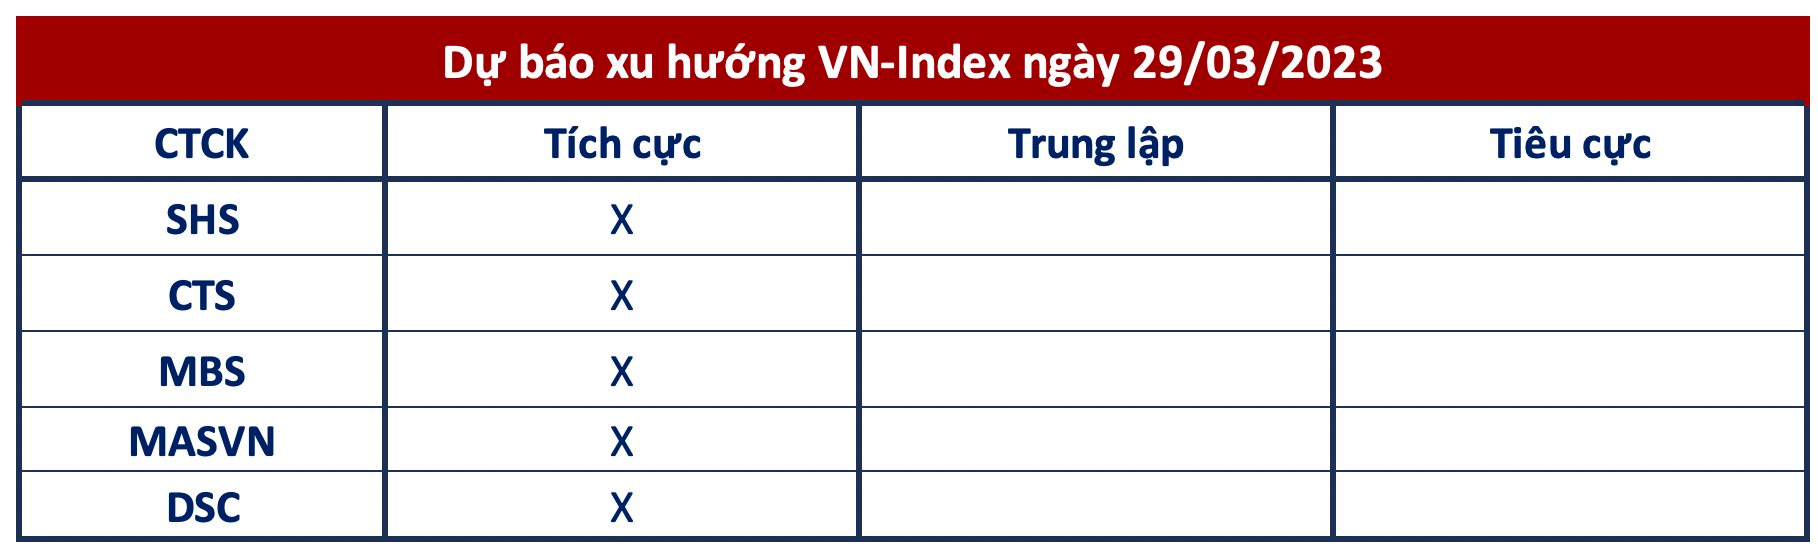 Góc nhìn CTCK: Xu hướng tích cực duy trì, VN-Index có thể tiếp tục tăng điểm - Ảnh 1.